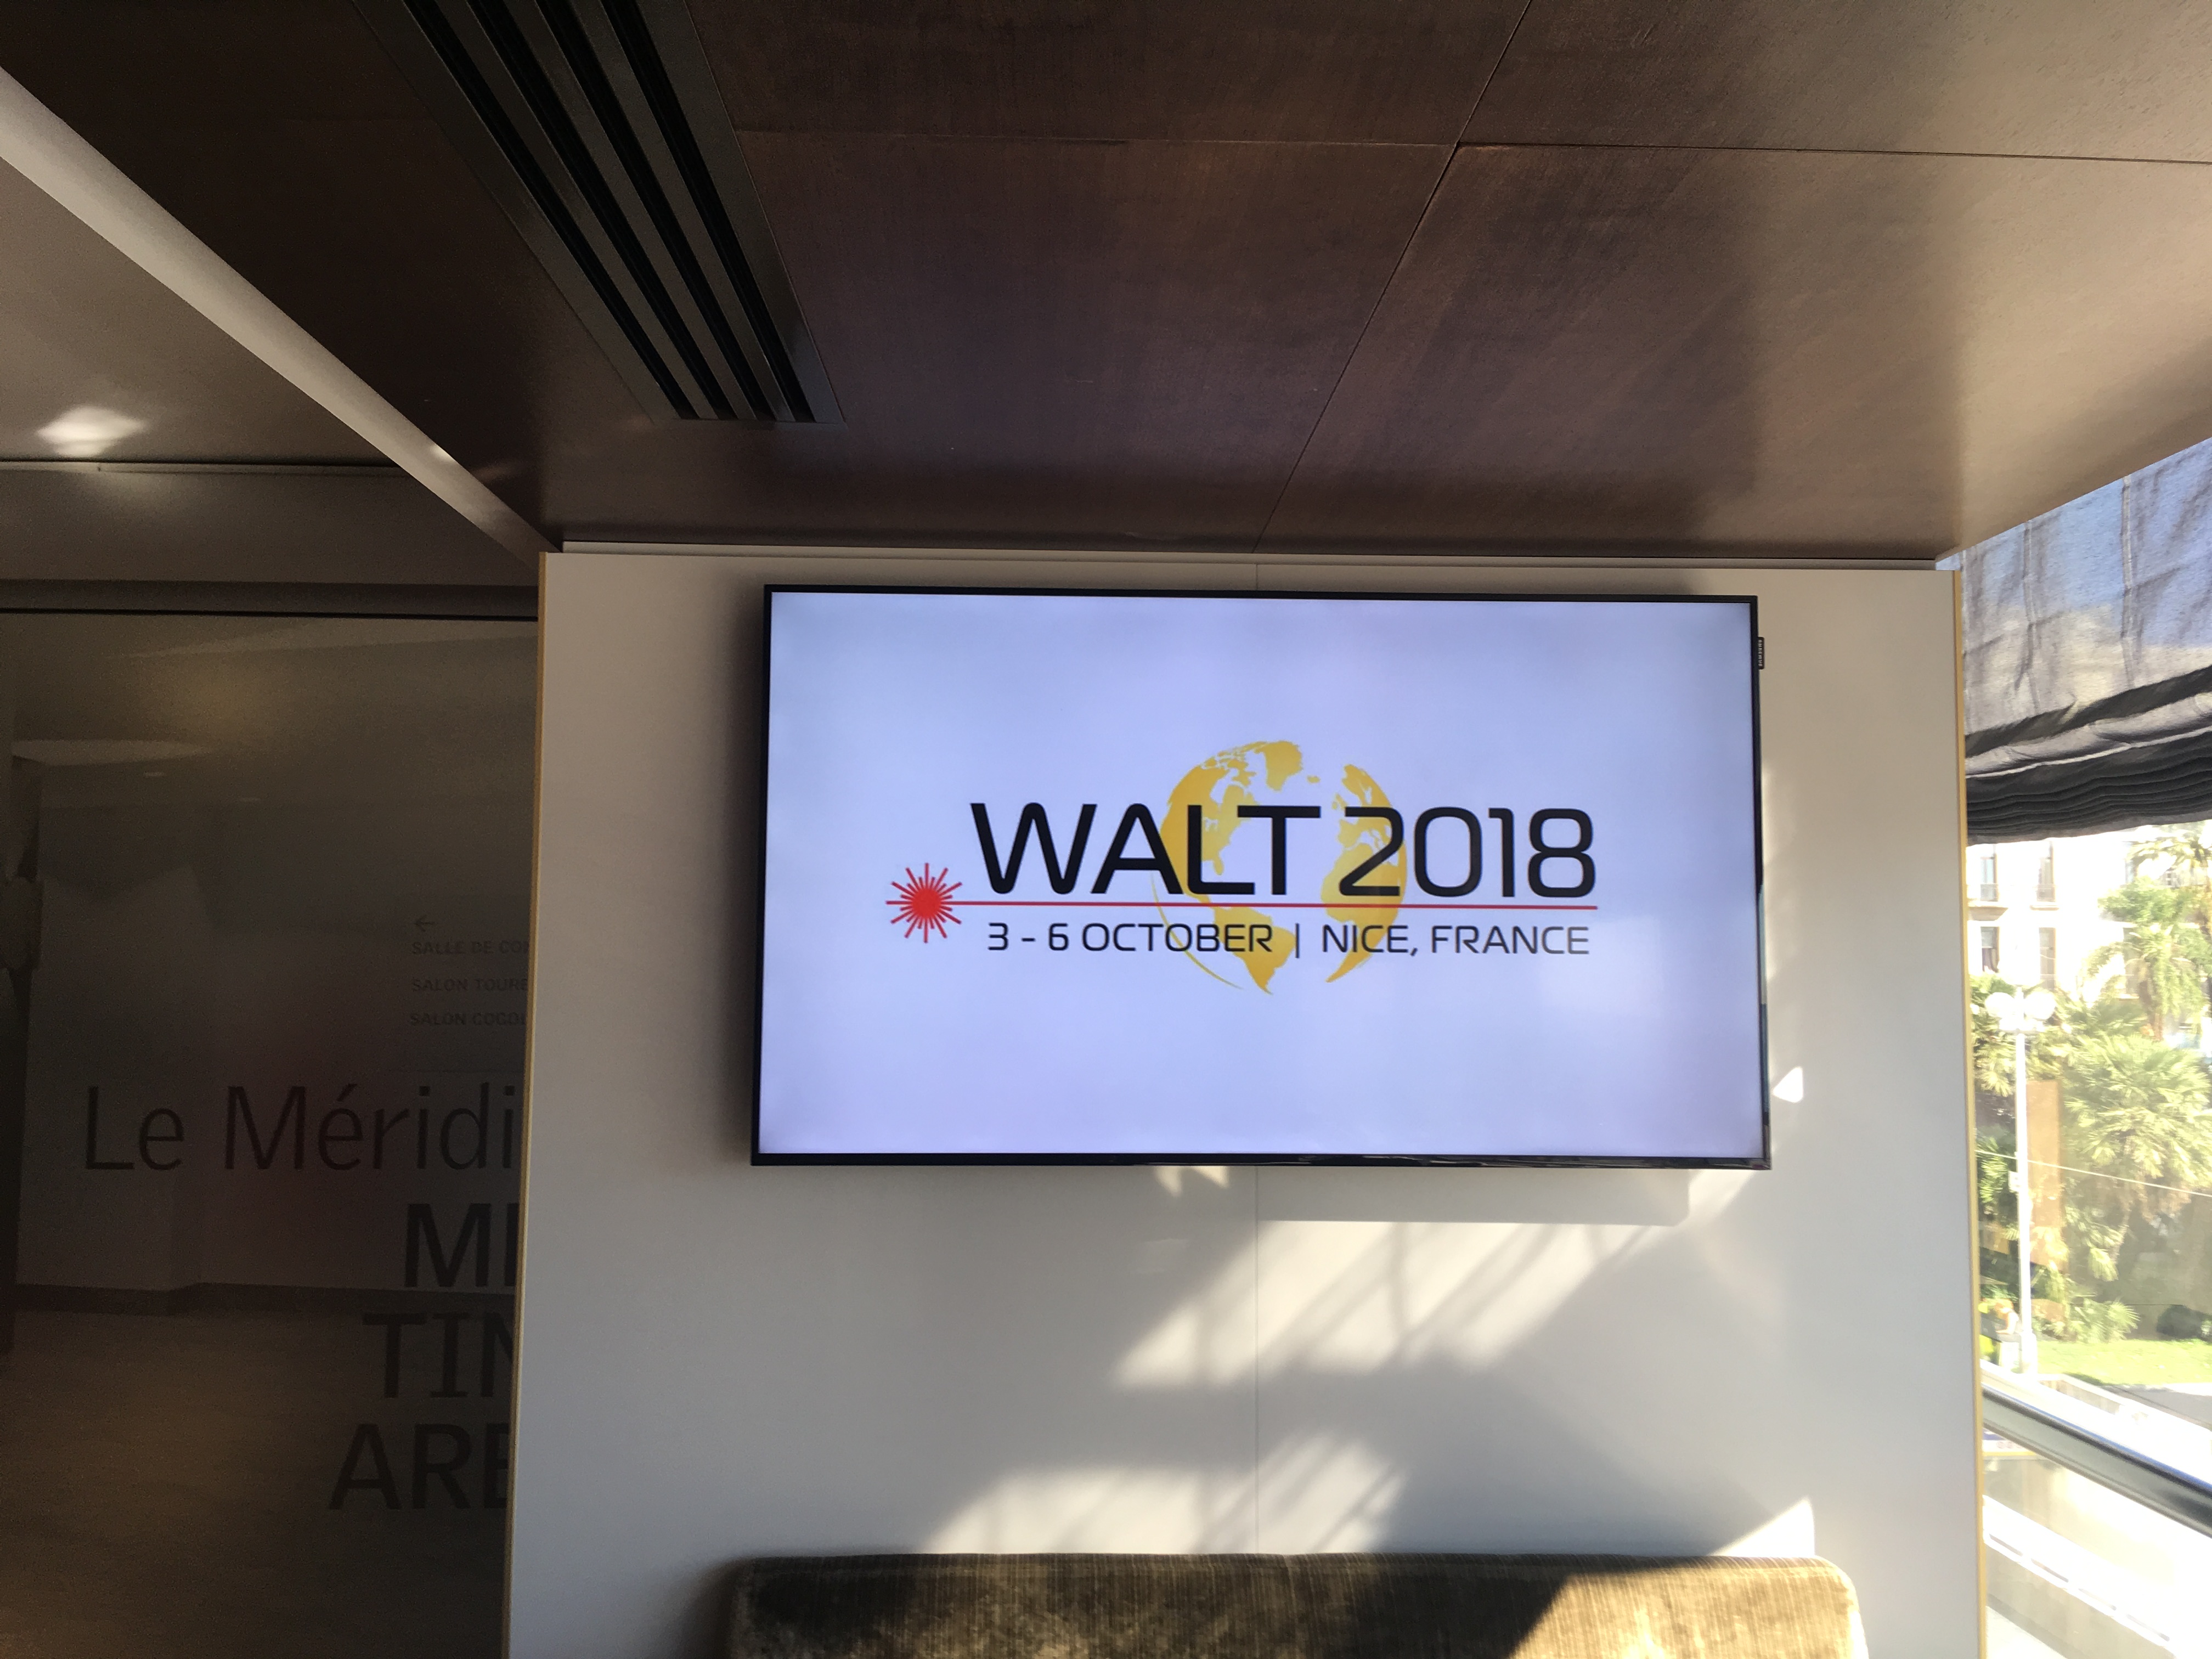 WALT conference 2018